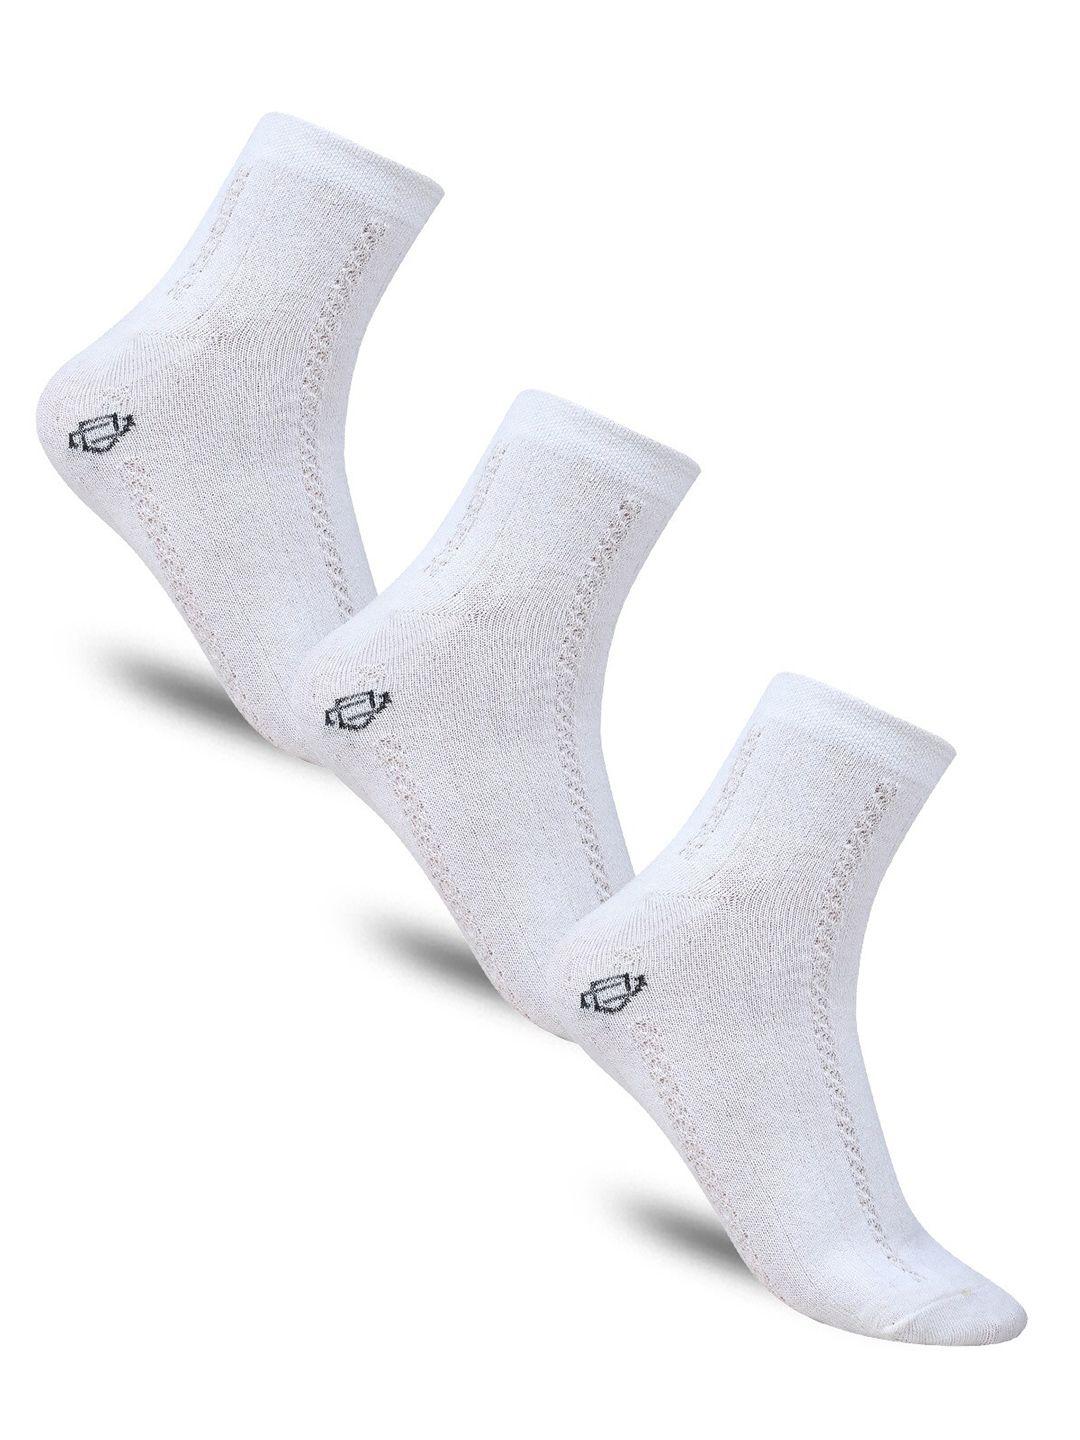 dollar-socks-women-pack-of-3-patterned-cotton-above-ankle-length-socks